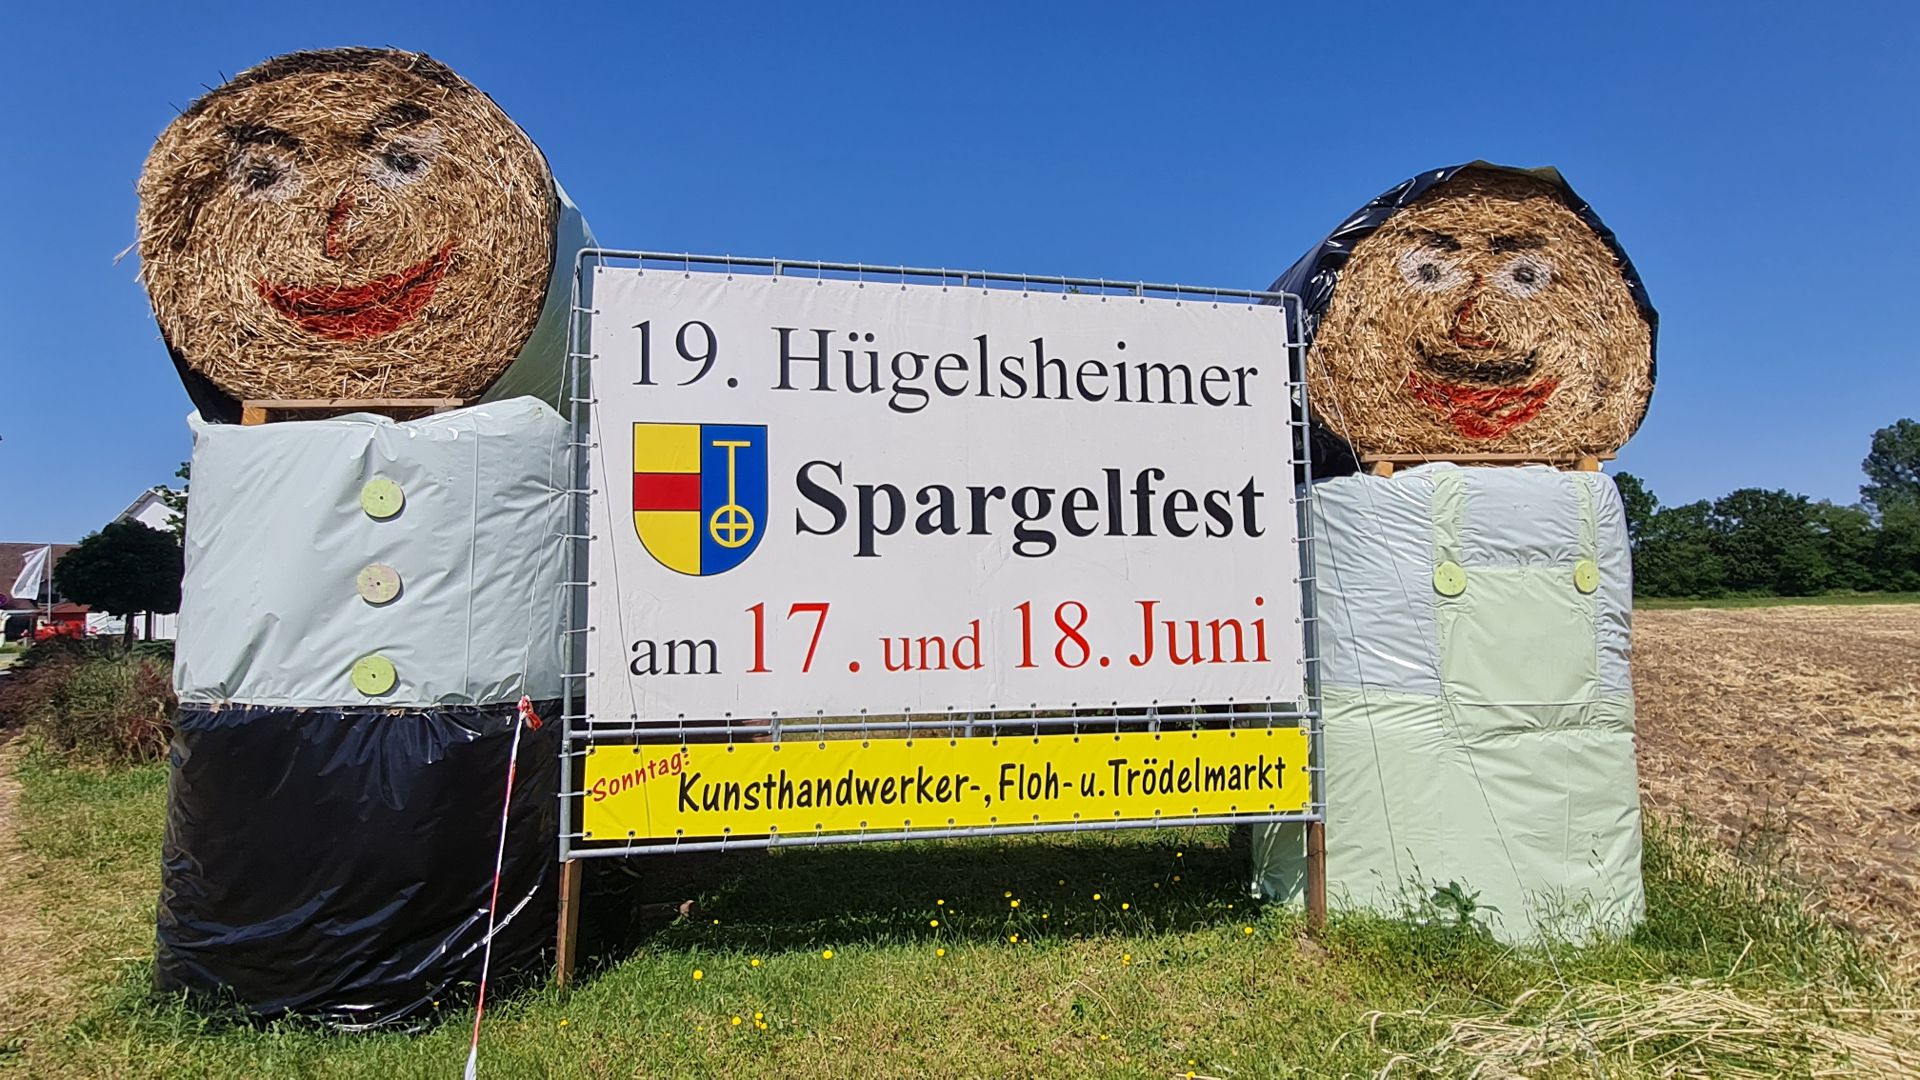 Die fröhlichen Strohfiguren sind der Hingucker am Ortseingang. Sie weisen auf das Spargelfest in Hügelsheim hin. 